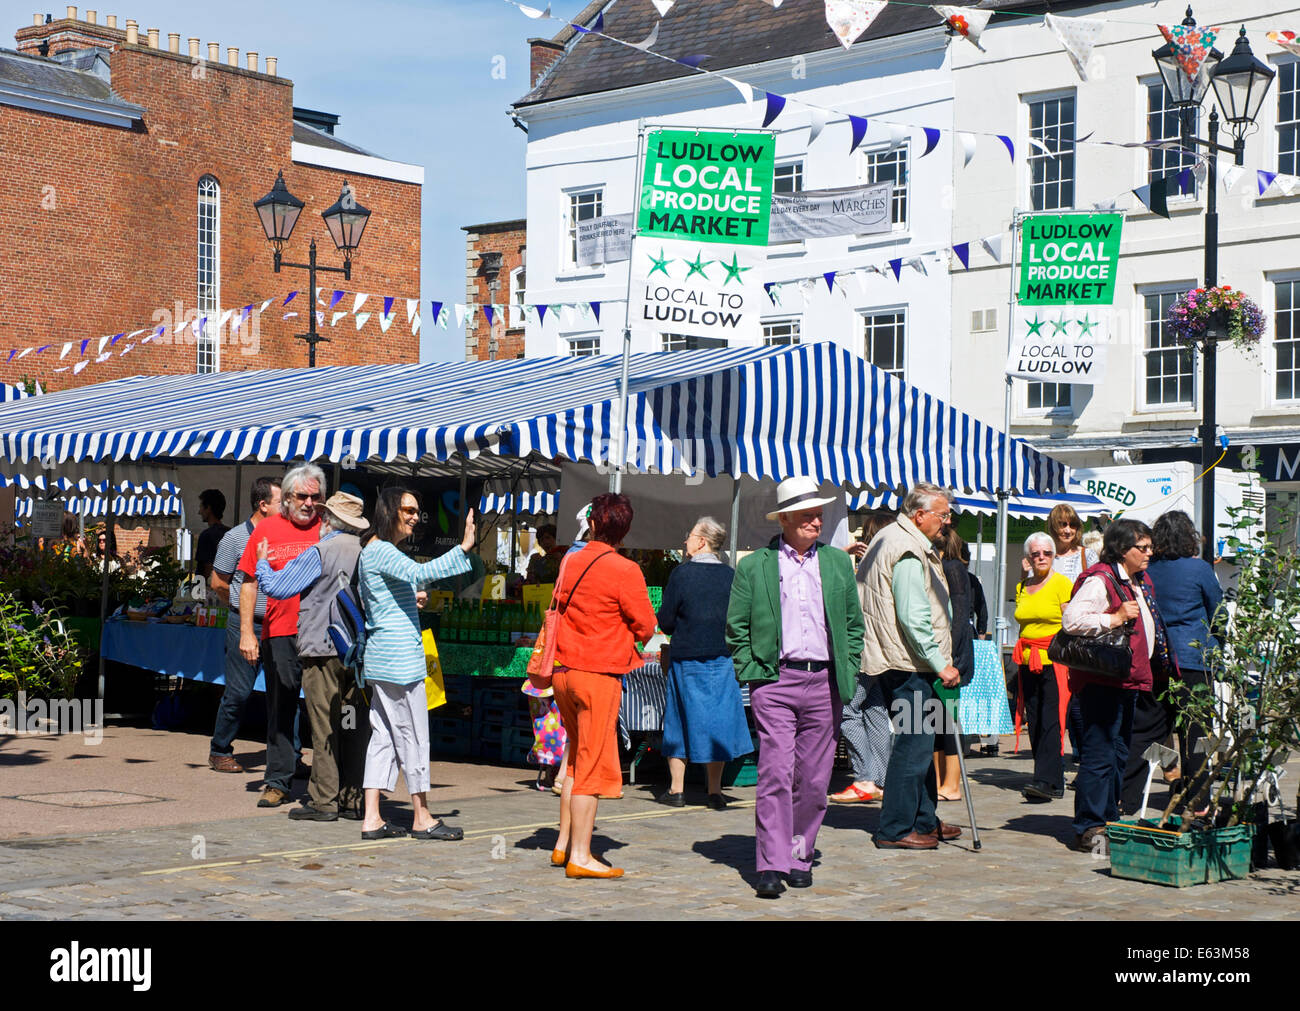 Local produce market in Ludlow, Shropshire, England UK Stock Photo